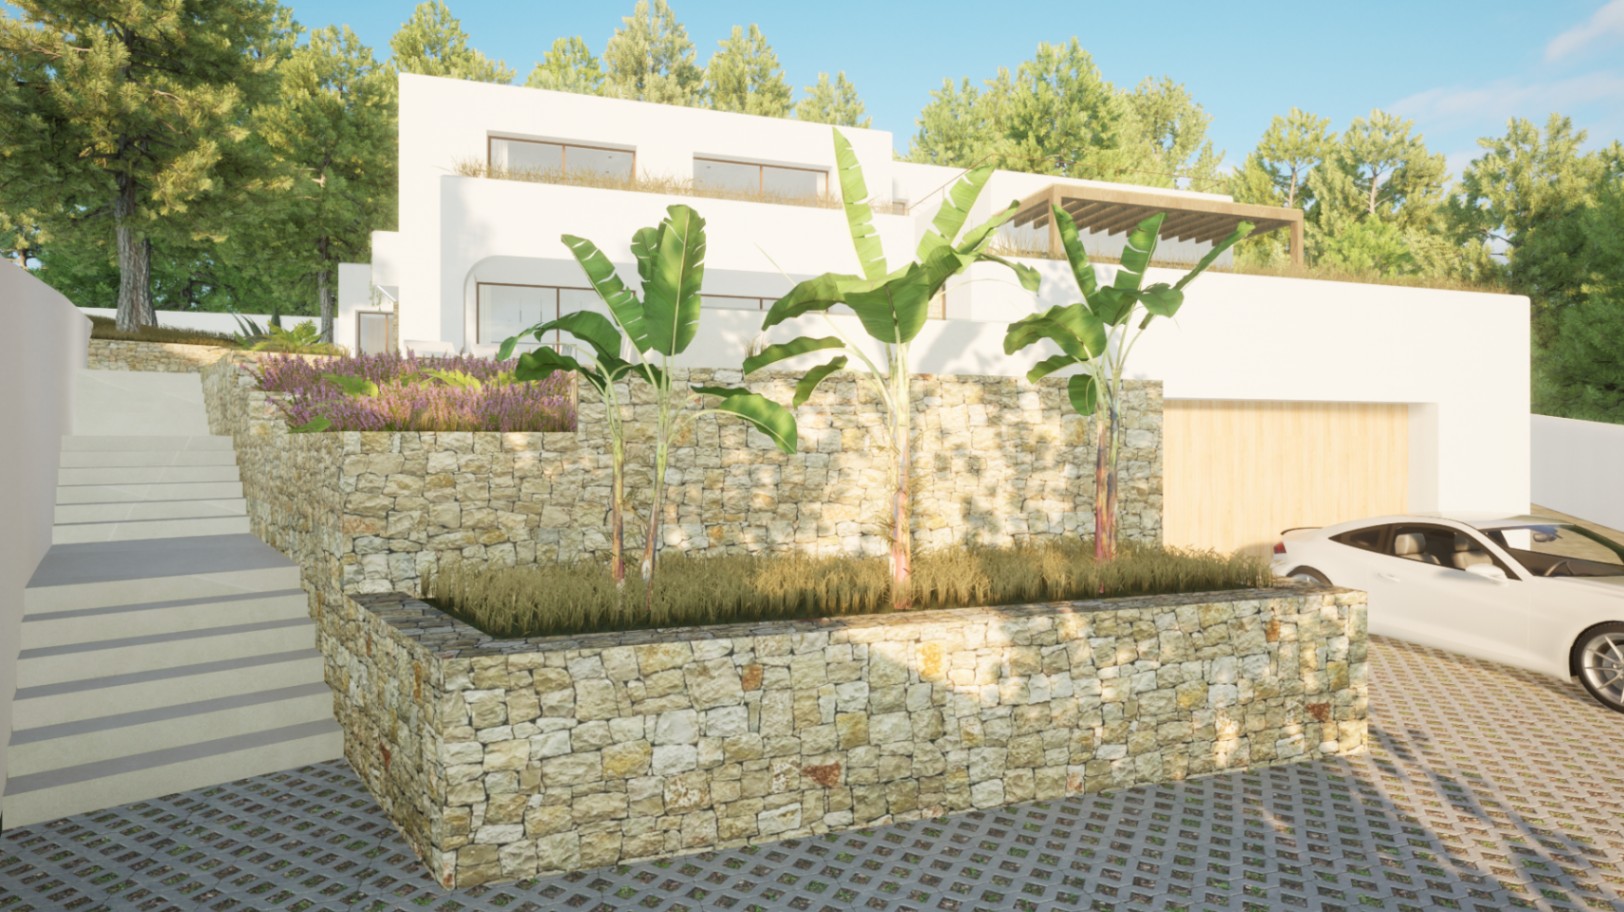 New build Ibizan style villa for sale in Costera del Mar Moraira, Costa Blanca